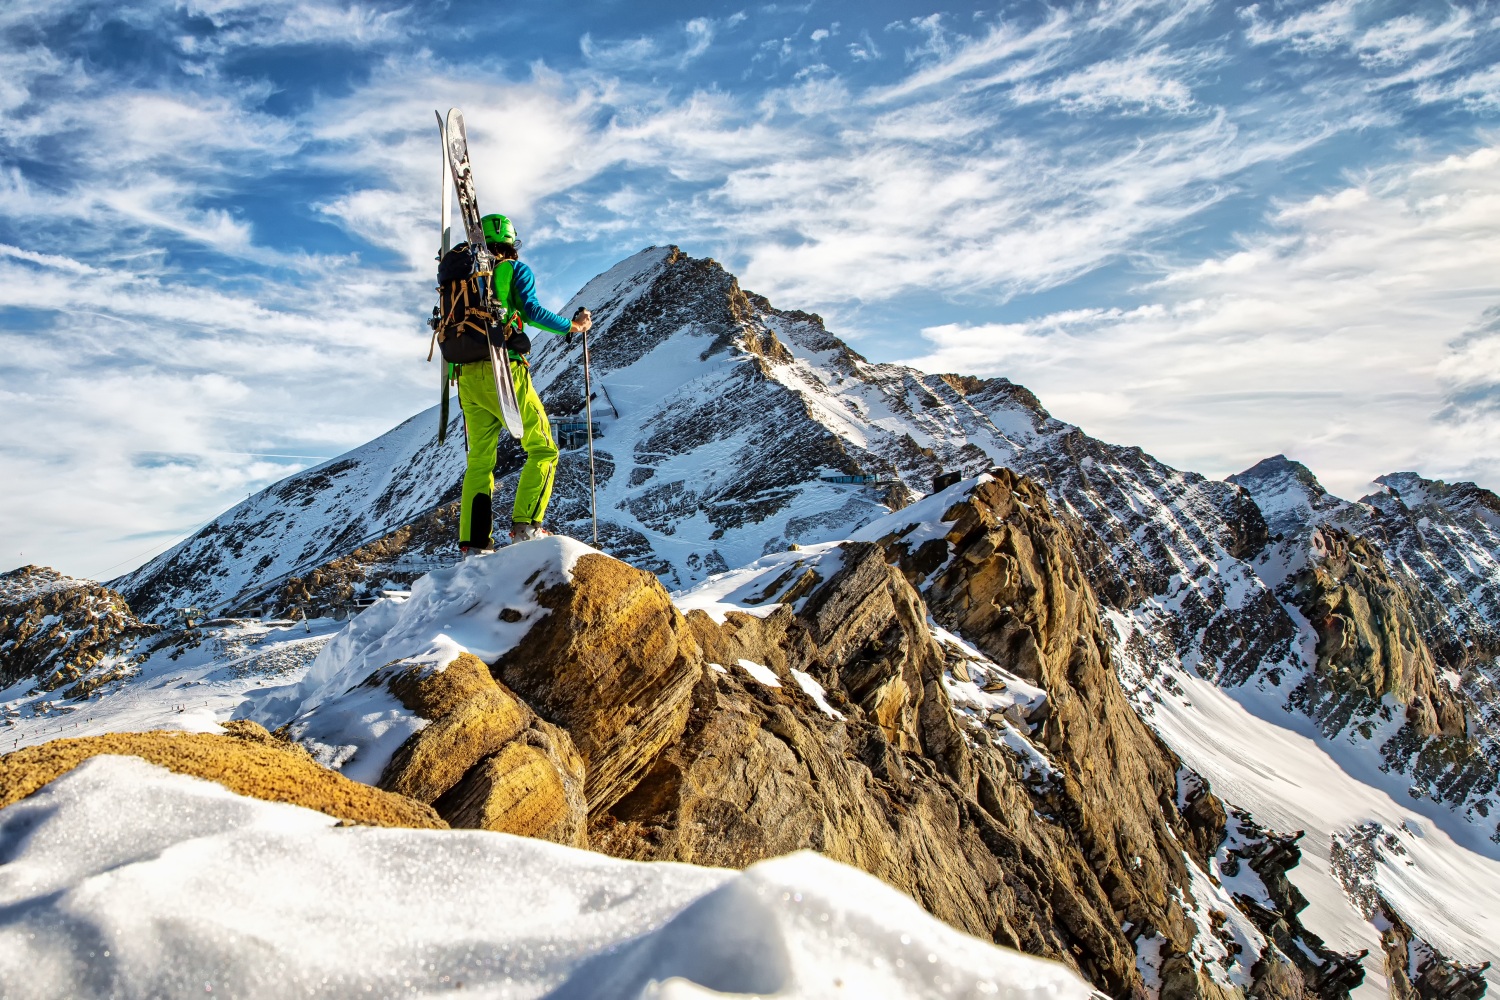 Man stood on rocky mountain during ski touring